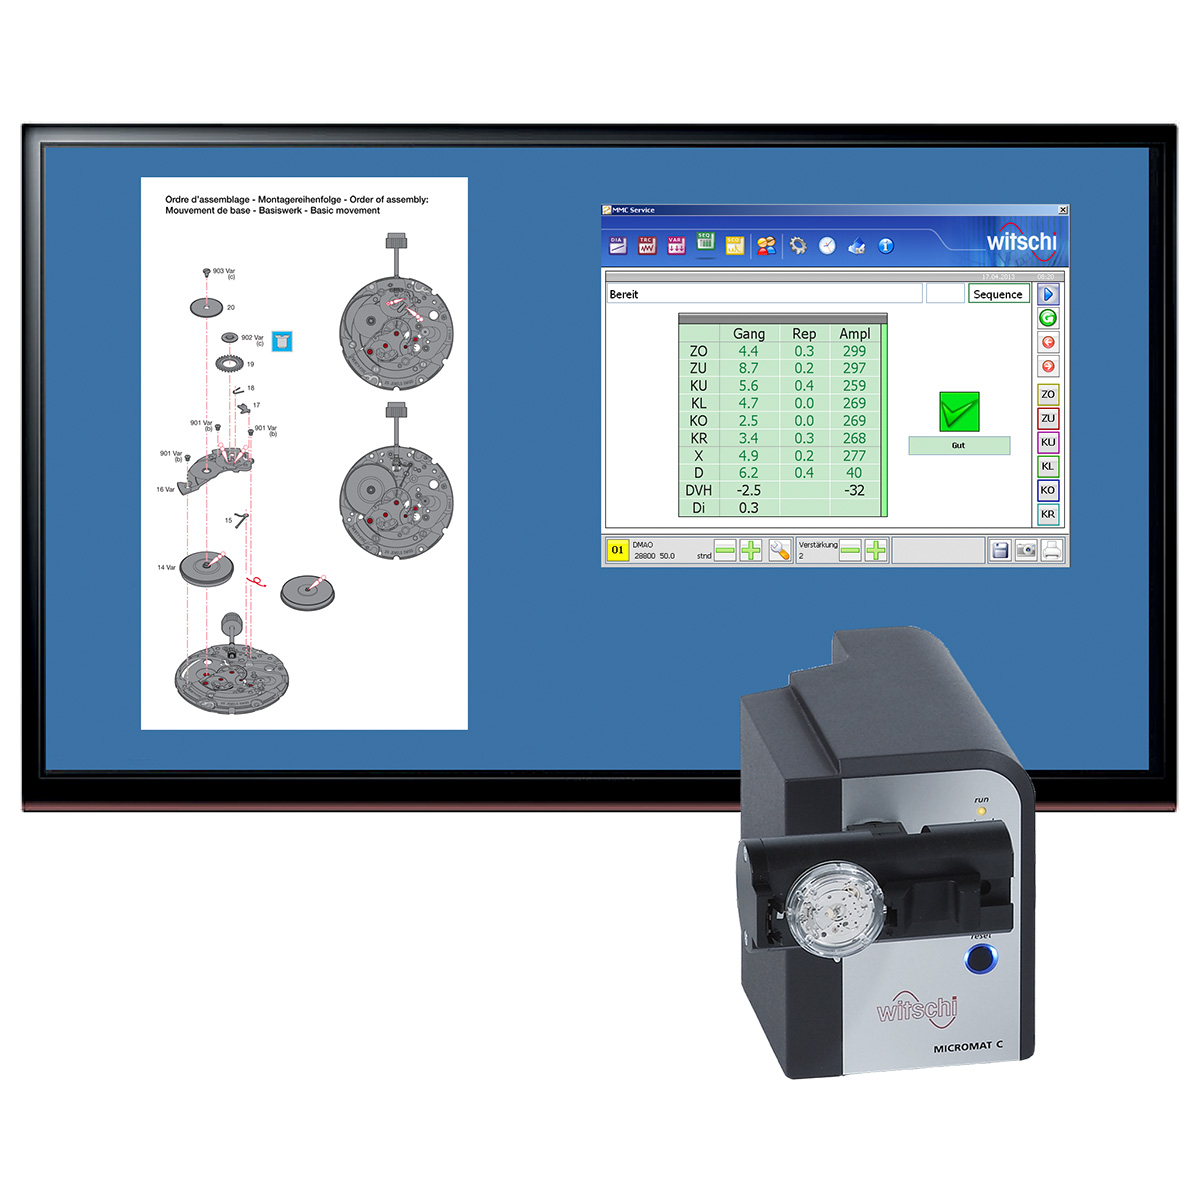 Witschi Micromat C systeem voor mechanische horloges incl. software, PC-vereiste volgens bijgevoegd
gegevensblad.